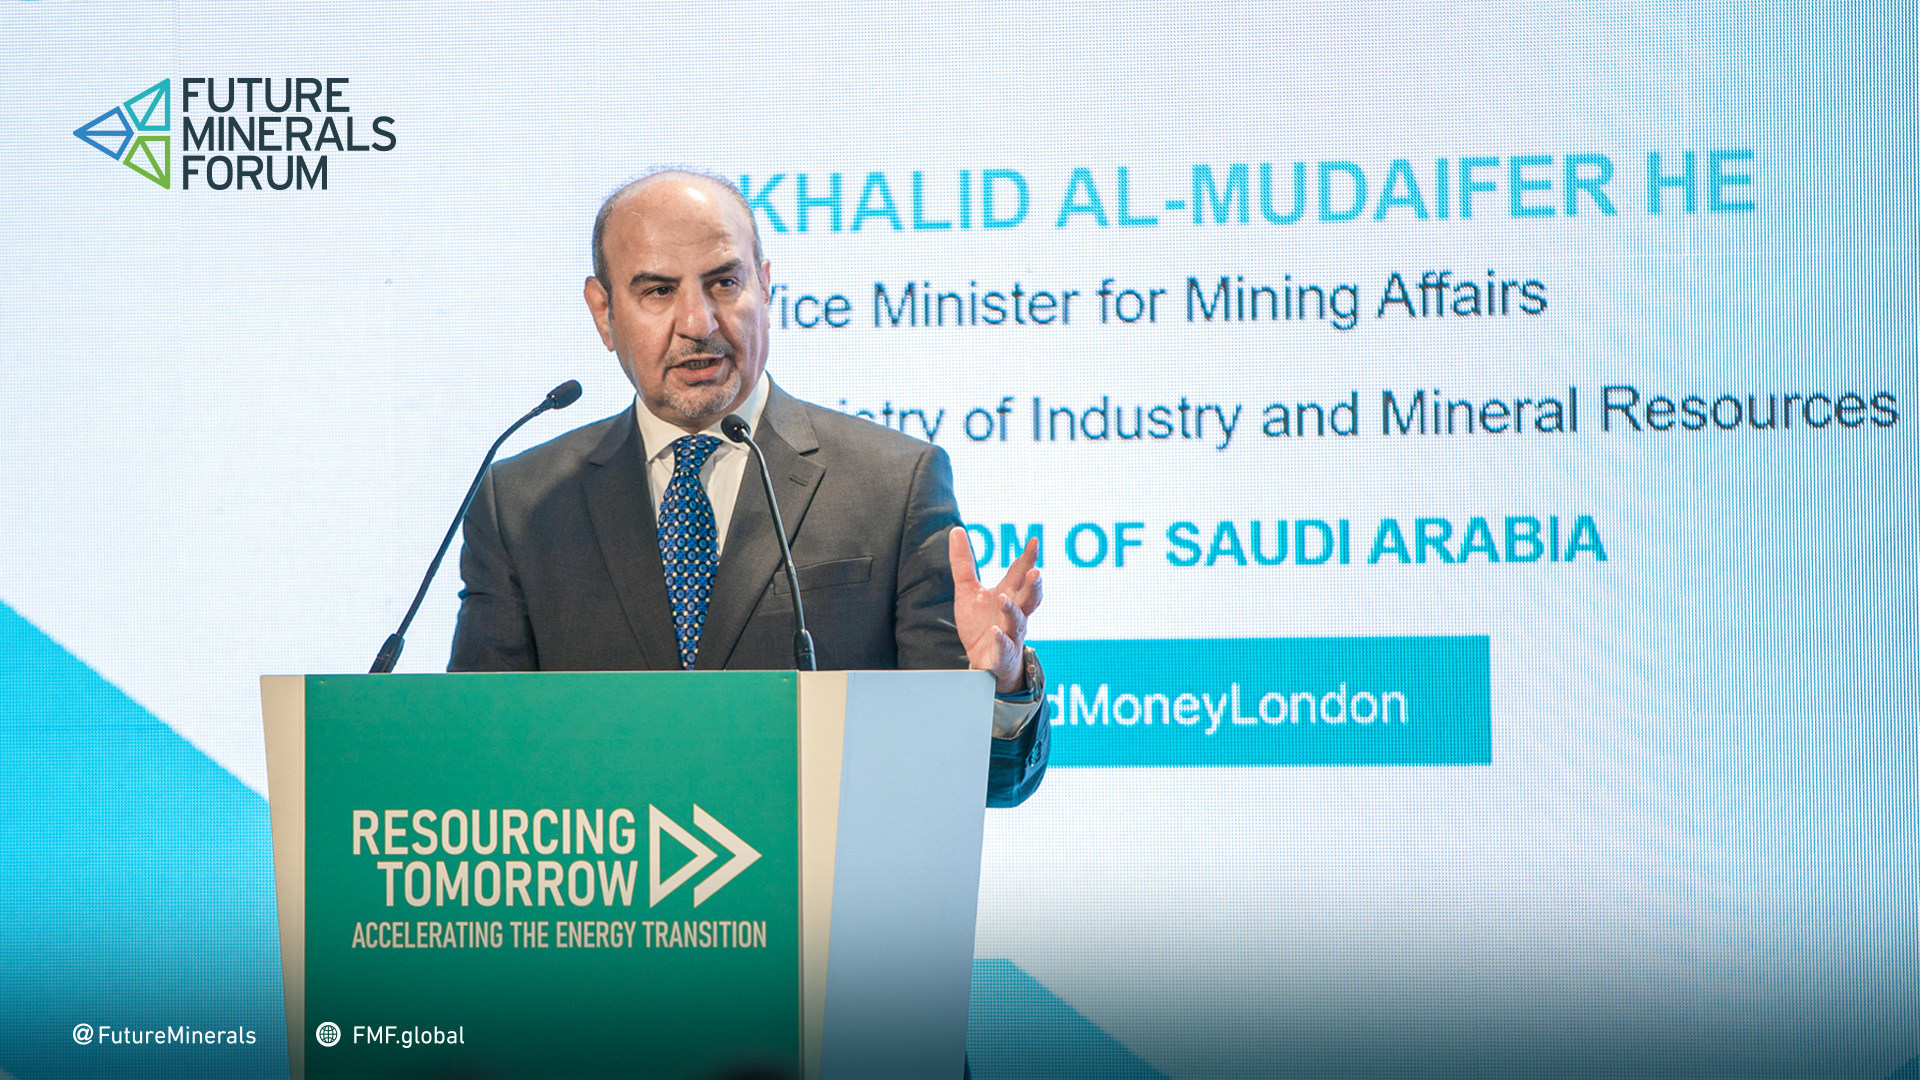 El Ministerio de Industria y Recursos Minerales de Arabia Saudita declara en la conferencia de Londres: "Arabia Saudita se convertirá en un líder en la producción sostenible de metales en beneficio de la transición a cero emisi